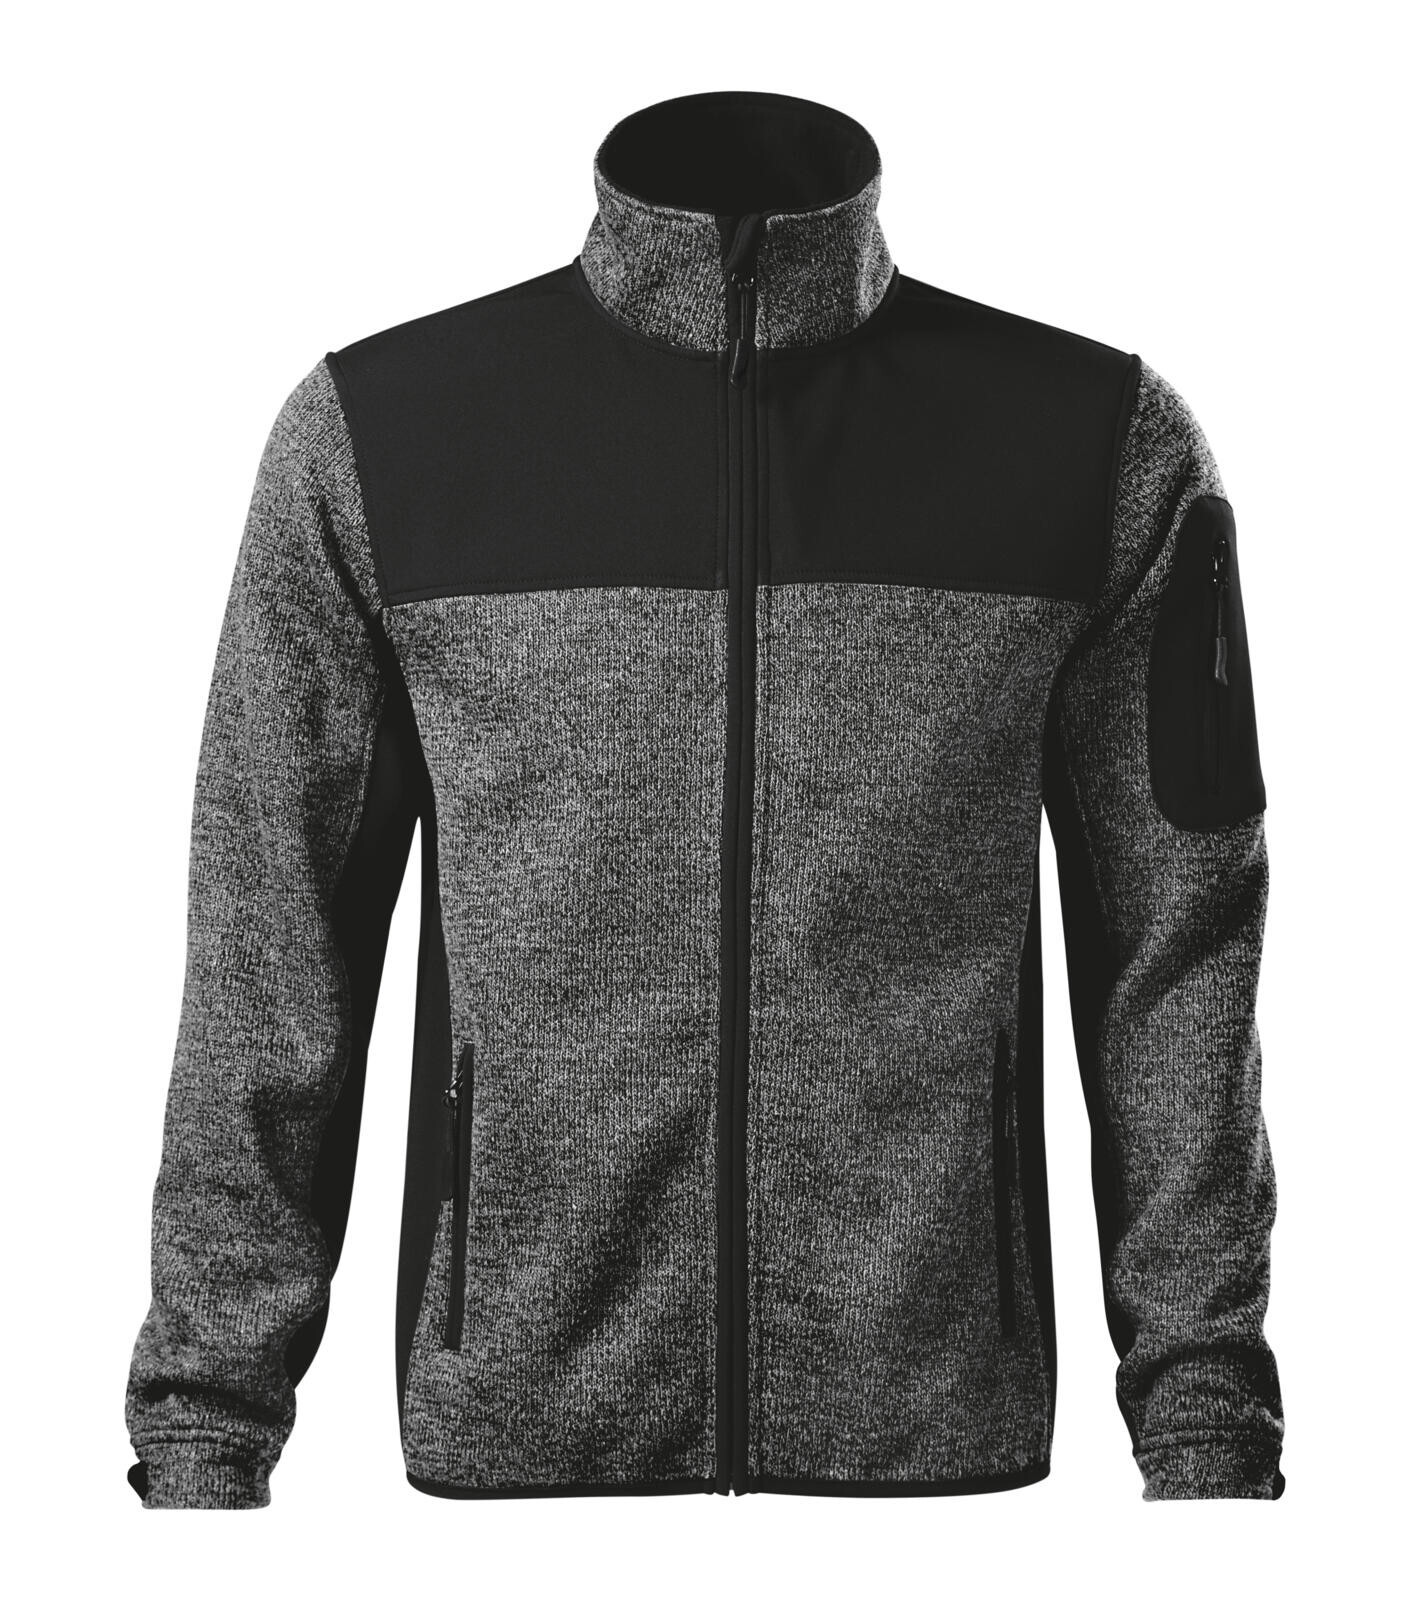 Pánska softshellová bunda Rimeck Casual 550 - veľkosť: XXL, farba: šedá knit